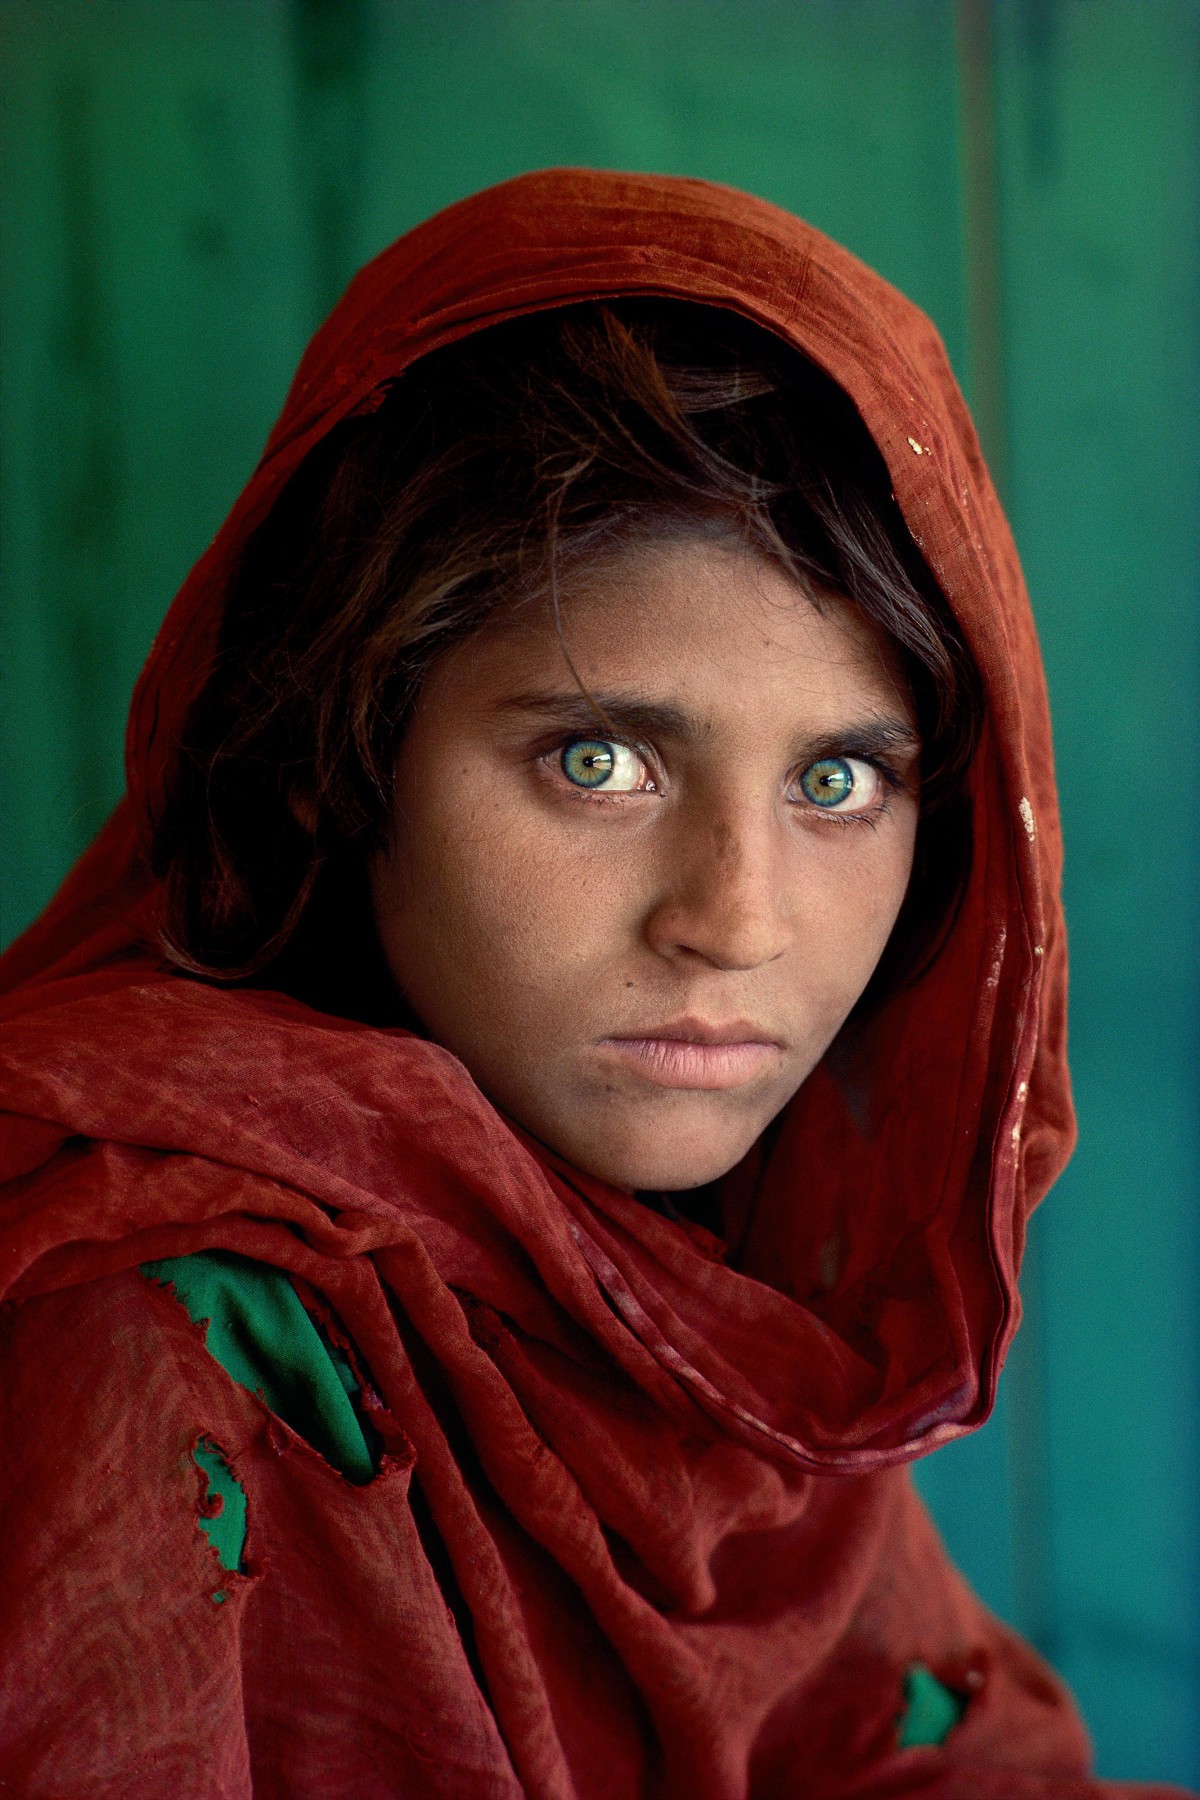 Стив МакКарри. Шарбат Гула. Афганская девочка. Лагерь беженцев Насир-Баг недалеко от Пешаварa, Пакистан.